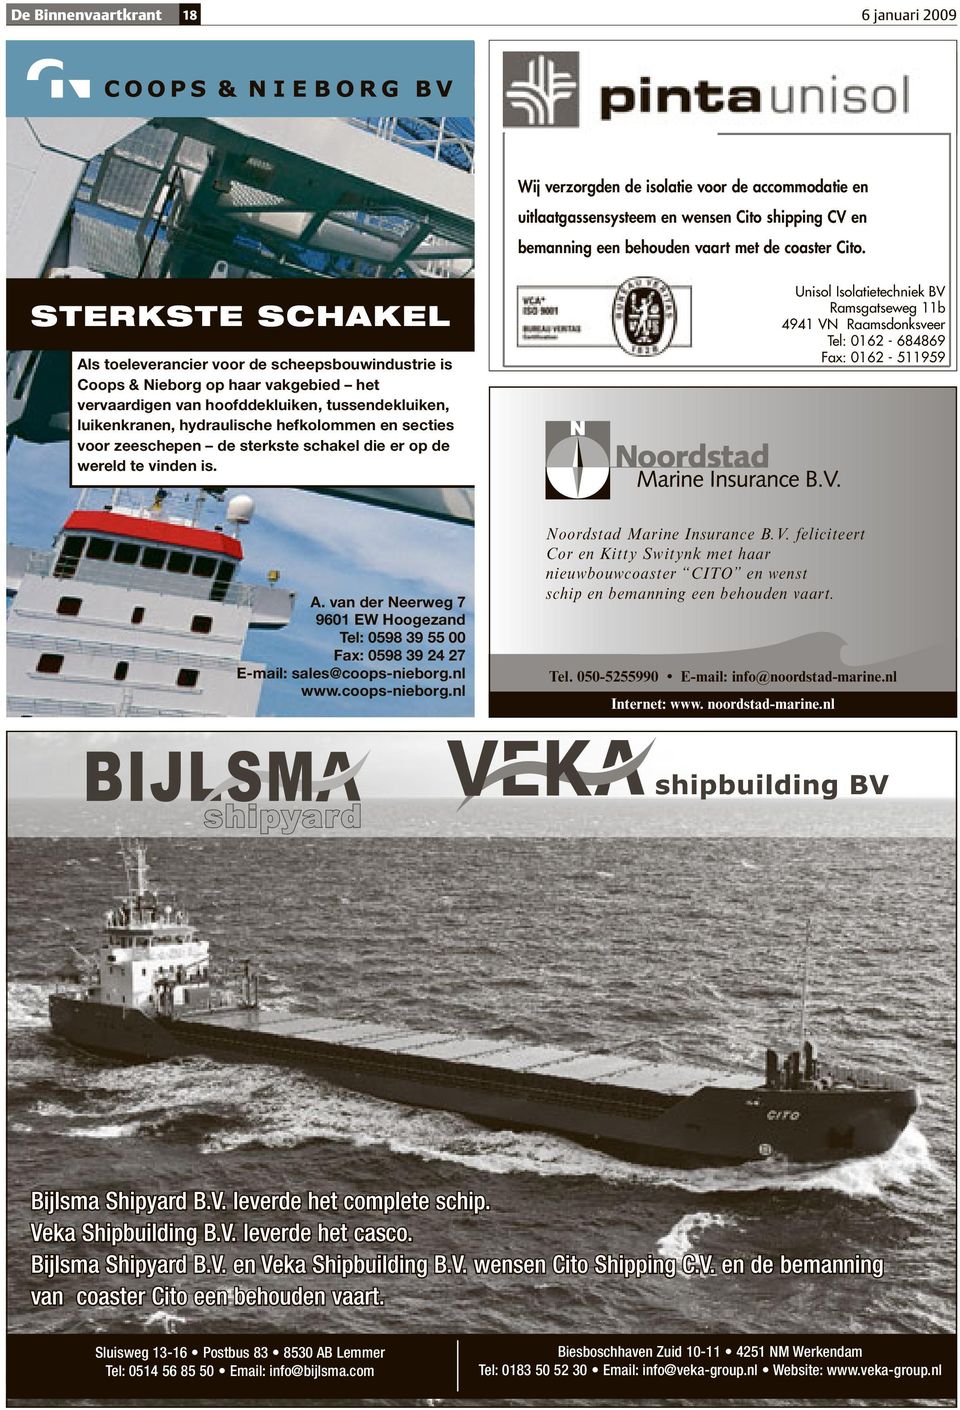 secties voor zeeschepen de sterkste schakel die er op de wereld te vinden is. Unisol Isolatietechniek BV Ramsgatseweg 11b 4941 VN Raamsdonksveer Tel: 0162-684869 Fax: 0162-511959 A.